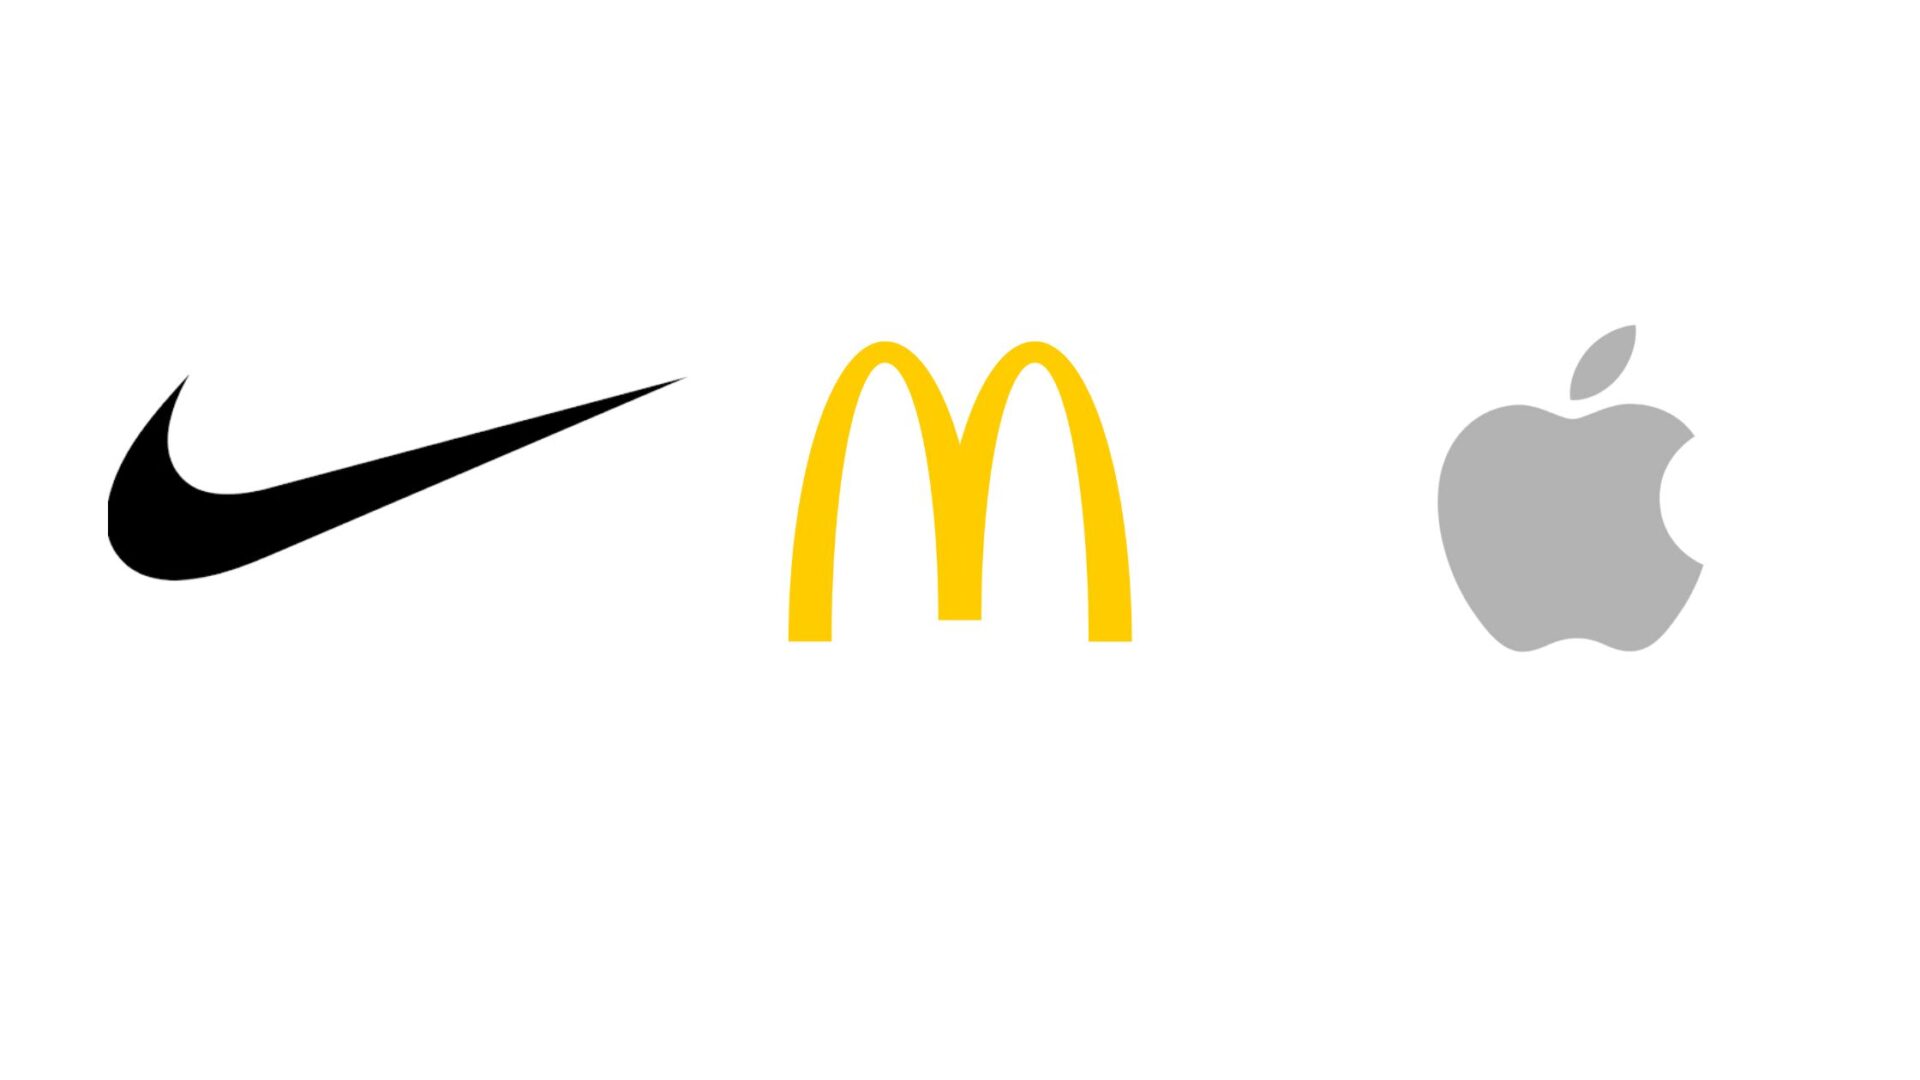 Elements of Brand Identity - logo